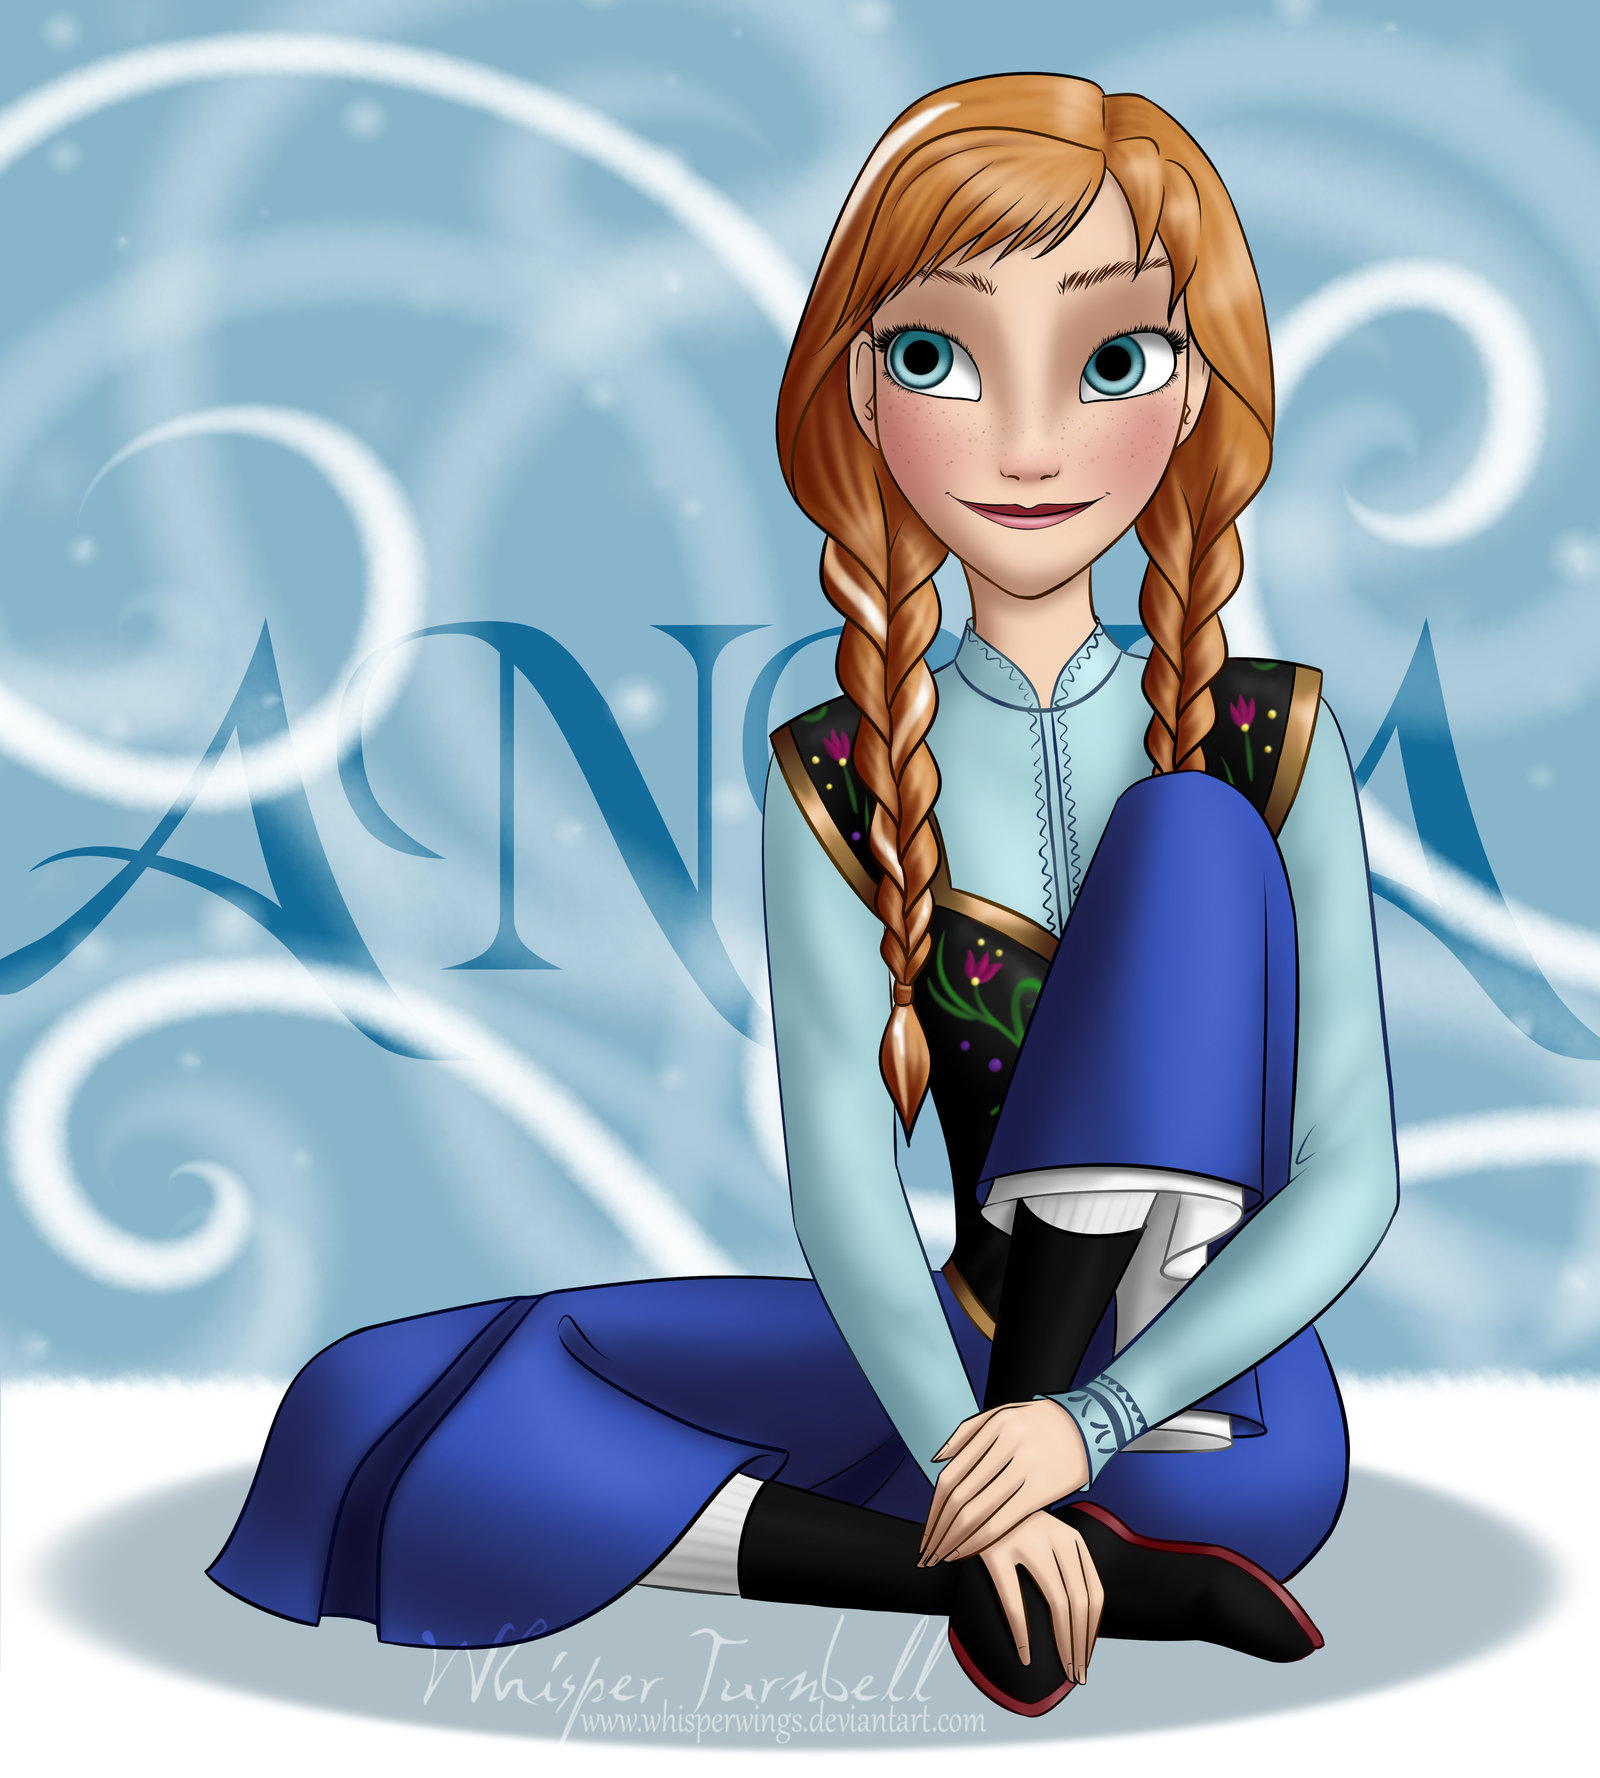 Frozen پرستار Art: Anna.